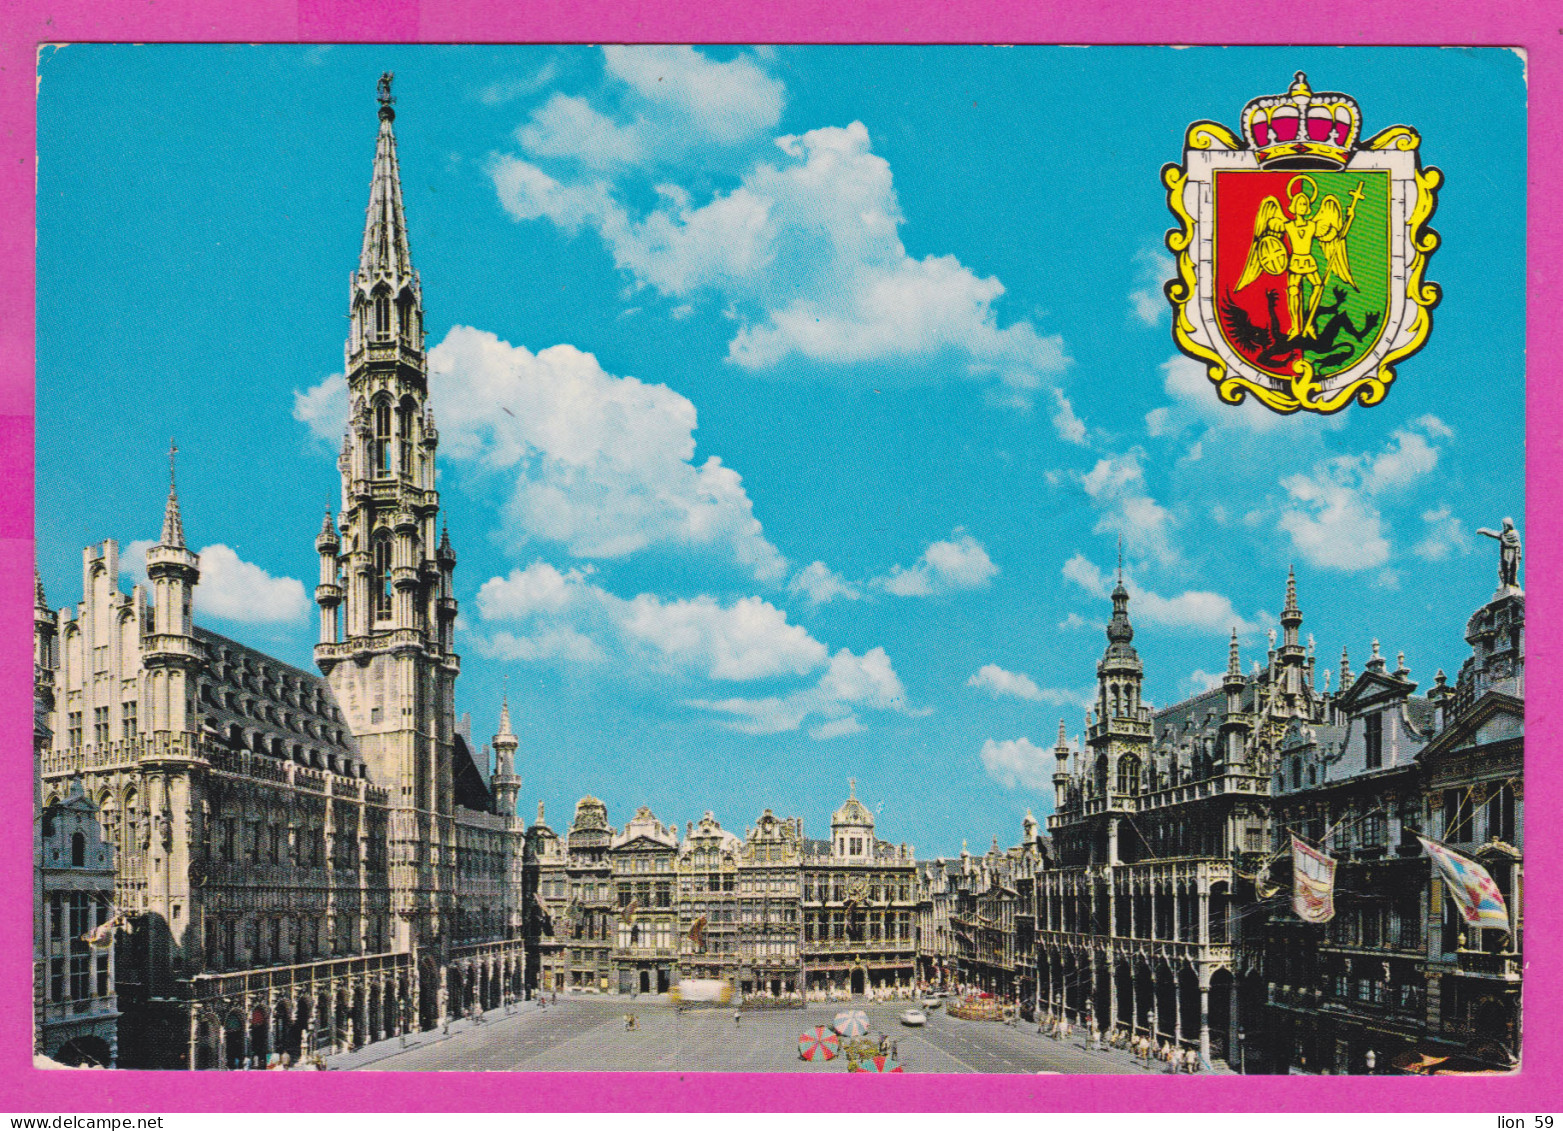 292385 / Belgium Bruxelles Brussel - Grand Square PC USED (O) 1977 - 5+5 Fr Mars And Mercur Belgique Belgien Belgio - Places, Squares